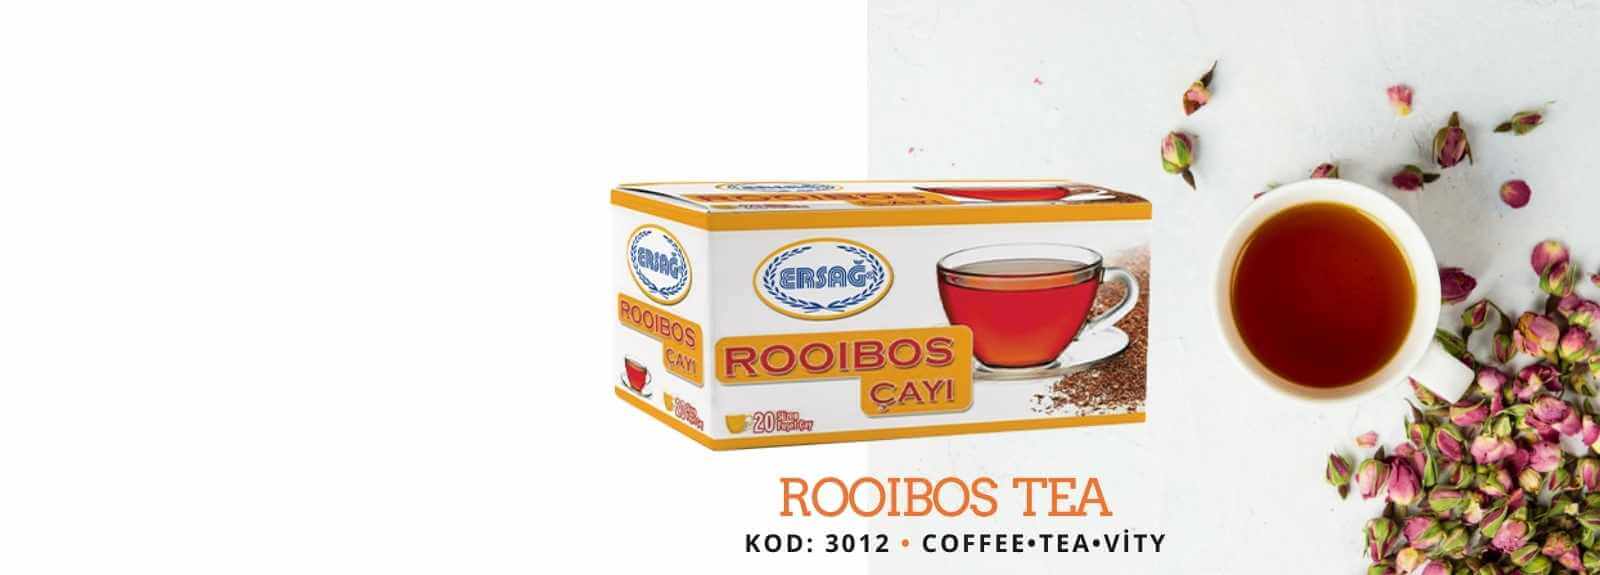 Rooibos çayı, Güney Afrika’da yetiştirilen ve “kırmızı çay” olarak da bilinen Rooibos yapraklarının özel baharatlarla harmanlanmasıyla elde edilmektedir. Roybos çayı, kalorisiz olmakla beraber içerisindeki potasyum, demir, kalsiyum, manganez, bakır, sodyum, florid gibi mineraller bakımından da son derece zengindir.